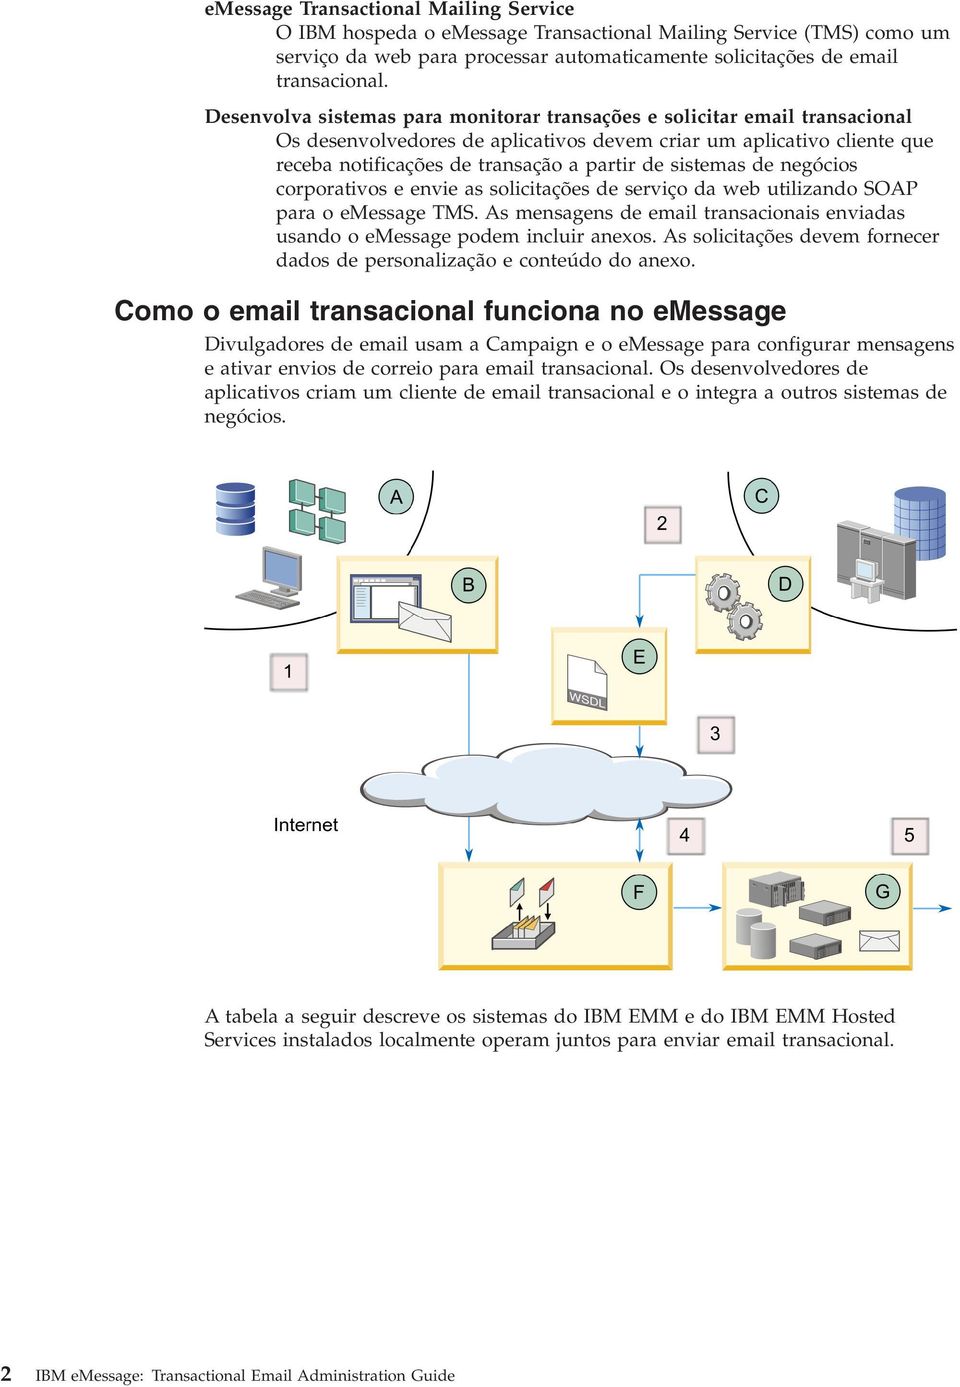 sistemas de negócios corporativos e envie as solicitações de serviço da web utilizando SOAP para o emessage TMS. As mensagens de email transacionais enviadas usando o emessage podem incluir anexos.